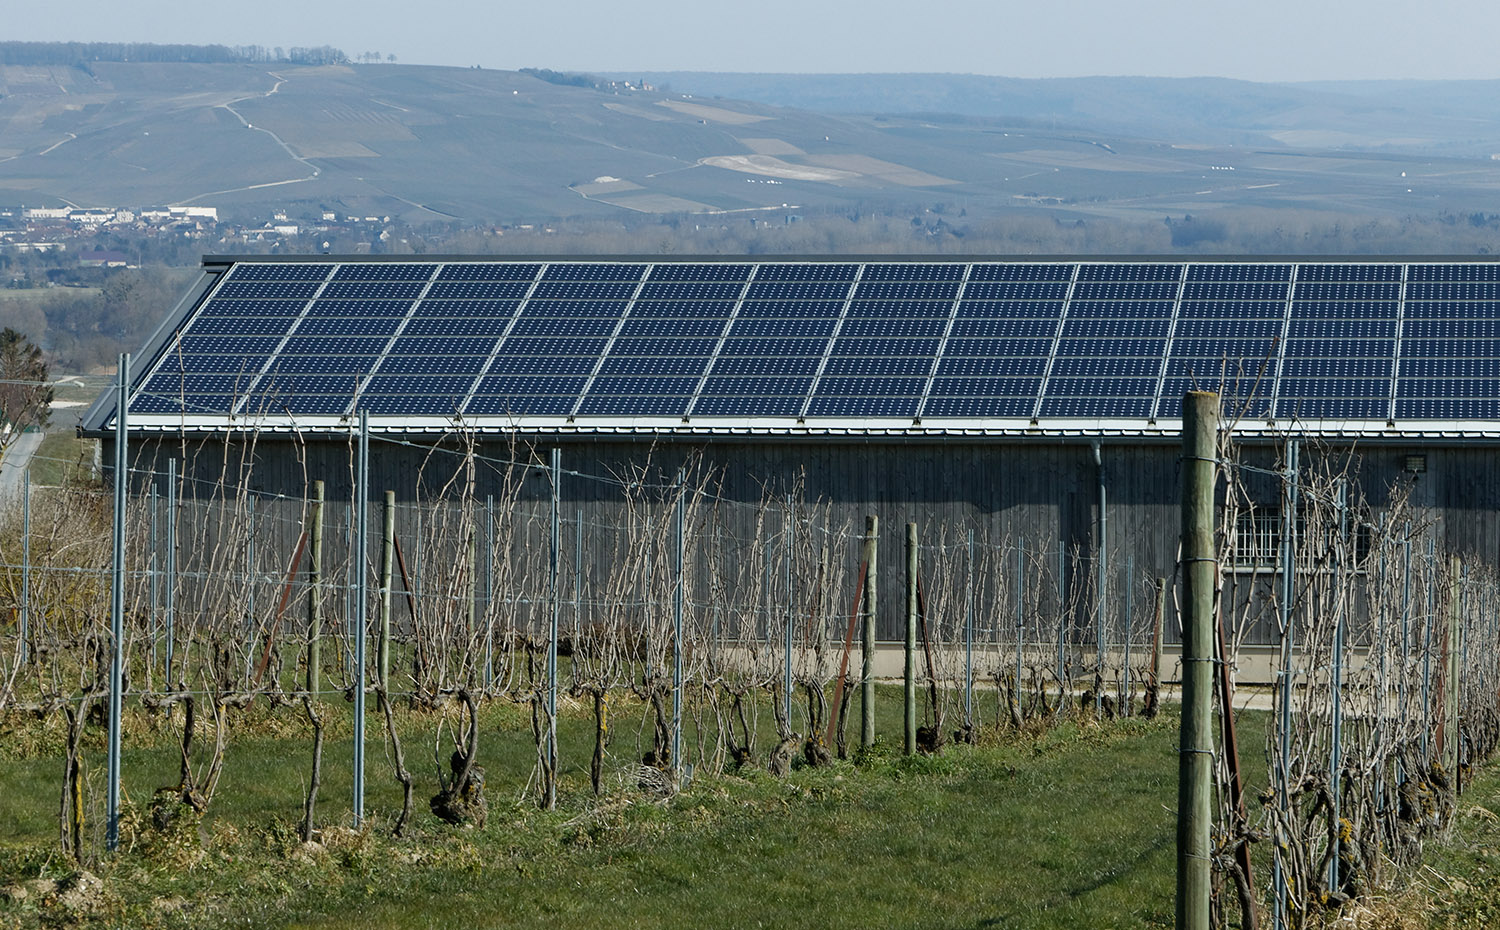 Cinq questions pour lancer son projet photovoltaïque